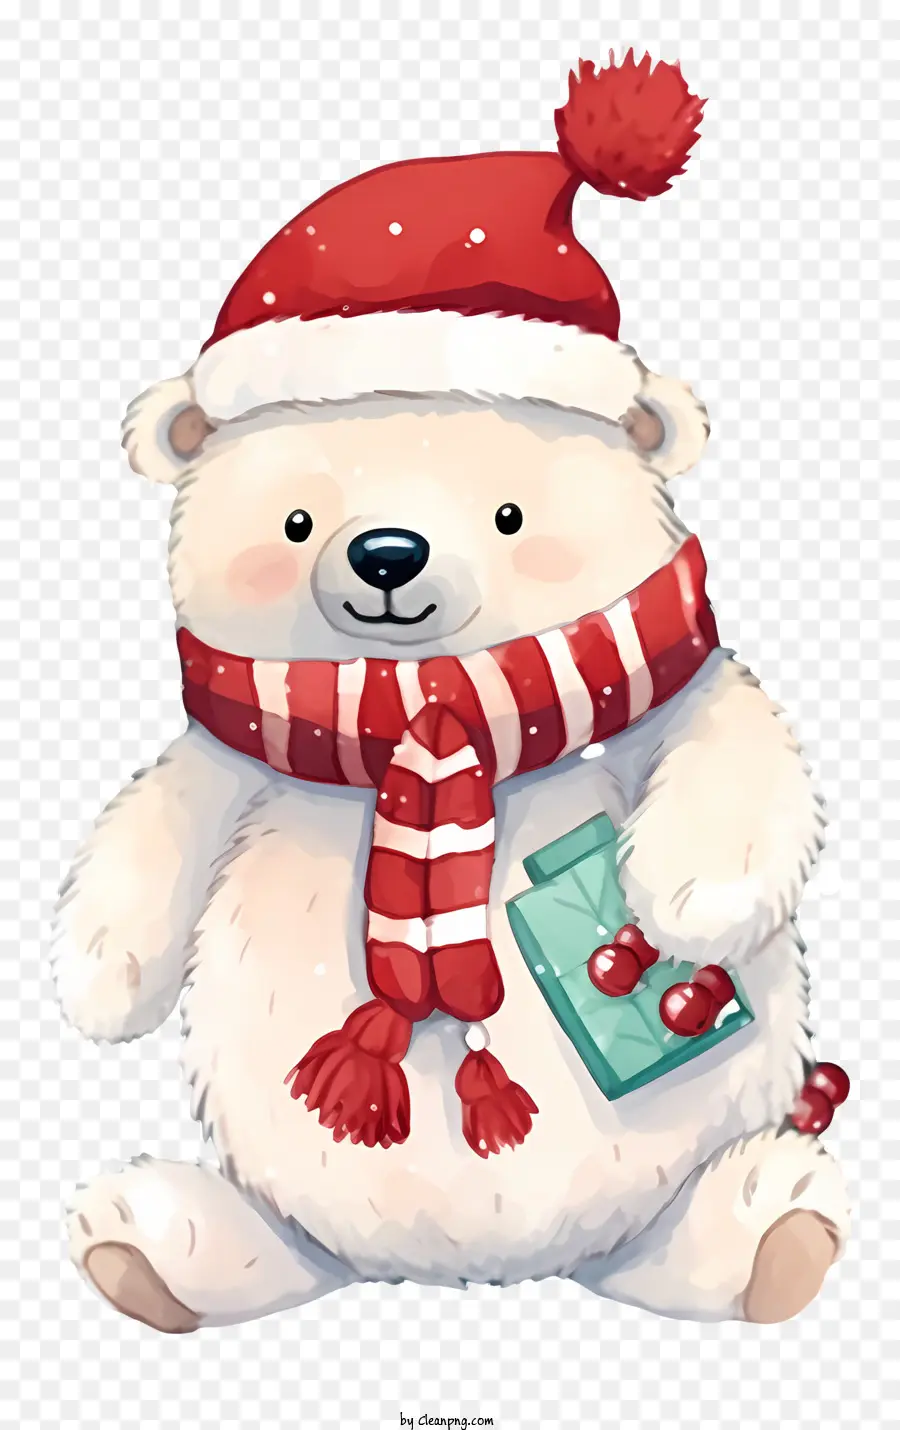 orso polare rosso e bianco sciarpa a strisce rossa e bianca cappello a strisce rossa e bianca cravatta a strisce rossa e bianca - Orso polare festivo con accessori rossi e bianchi